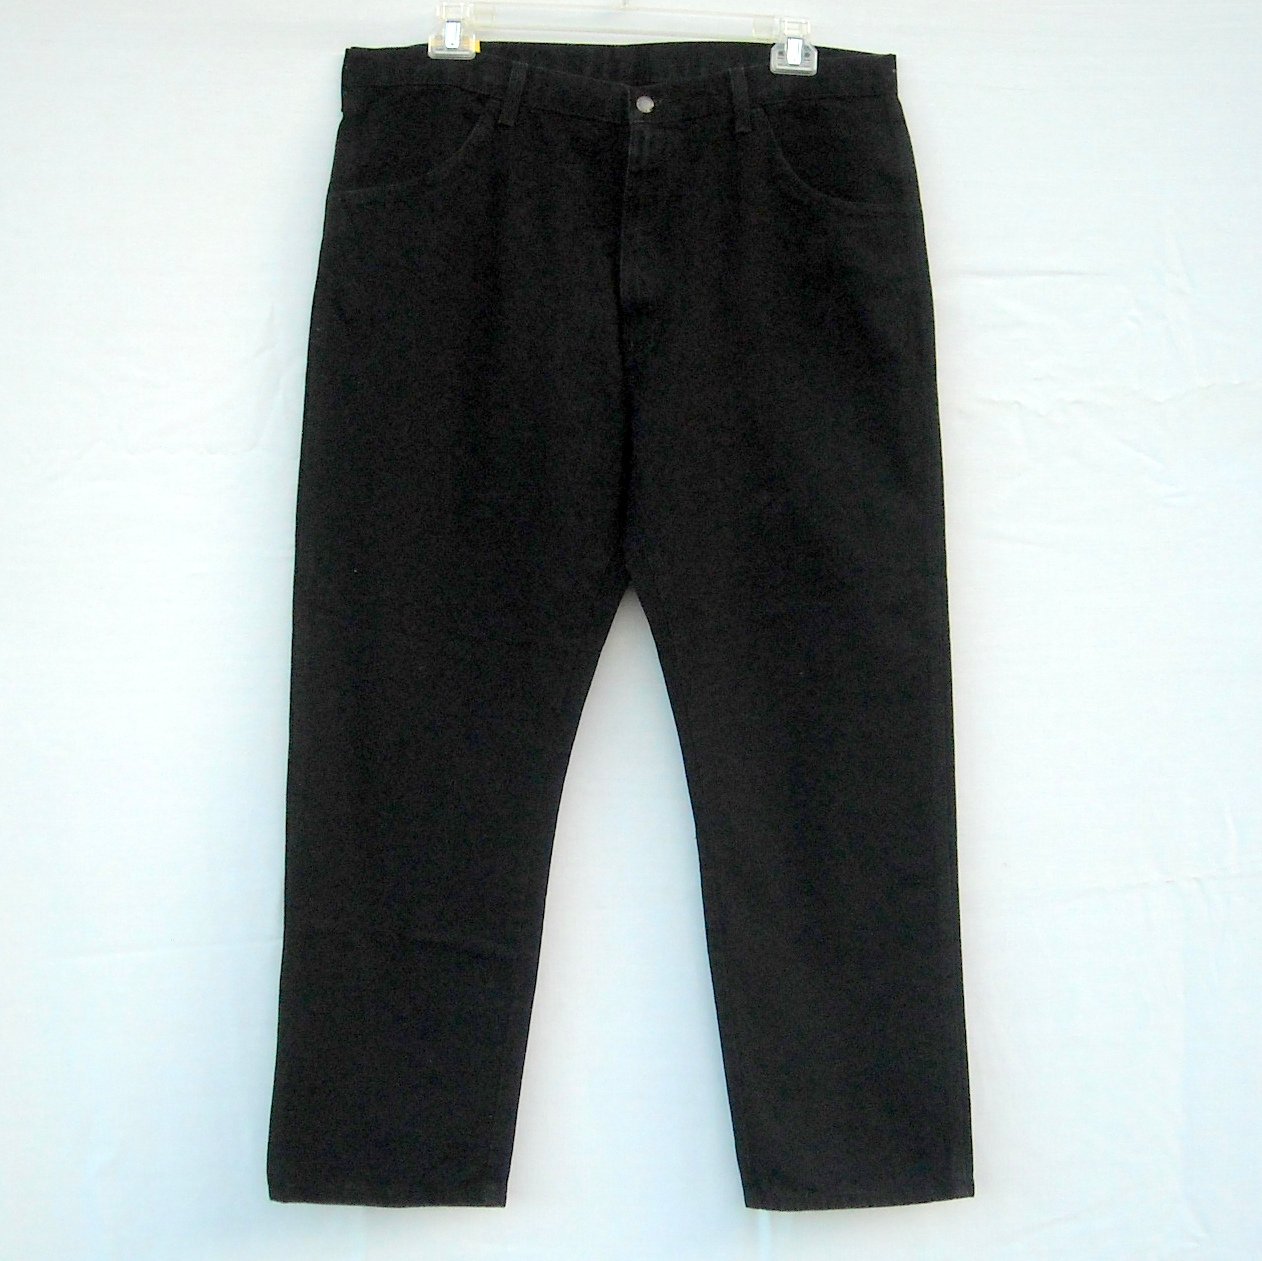 Rustler Mens Black Cotton Jeans Size 40 x 30